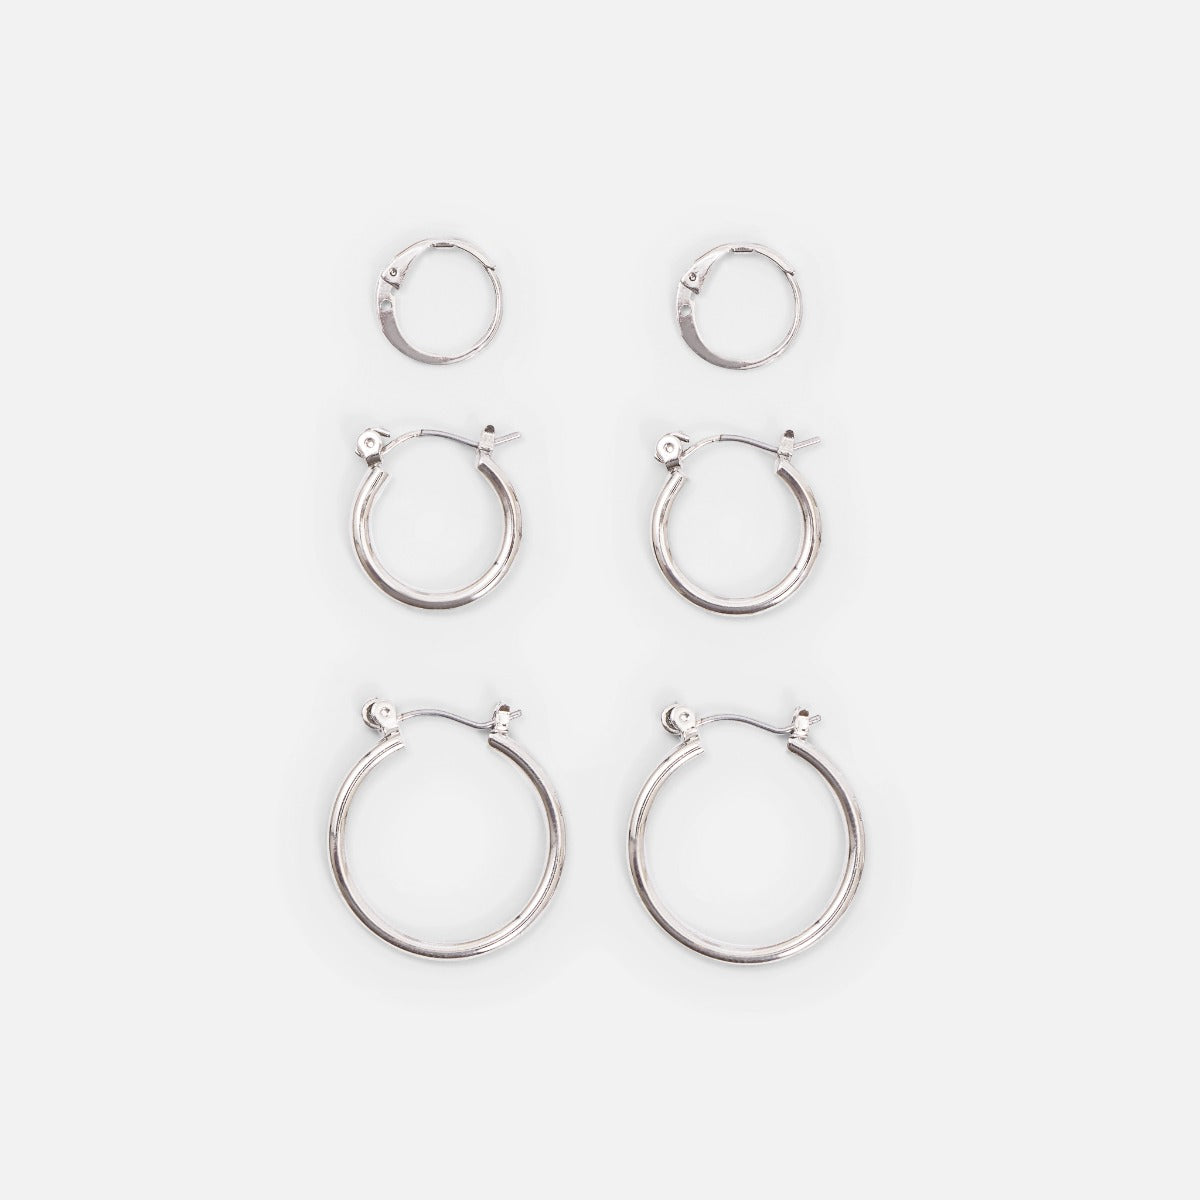 Silvered hoop earrings trio